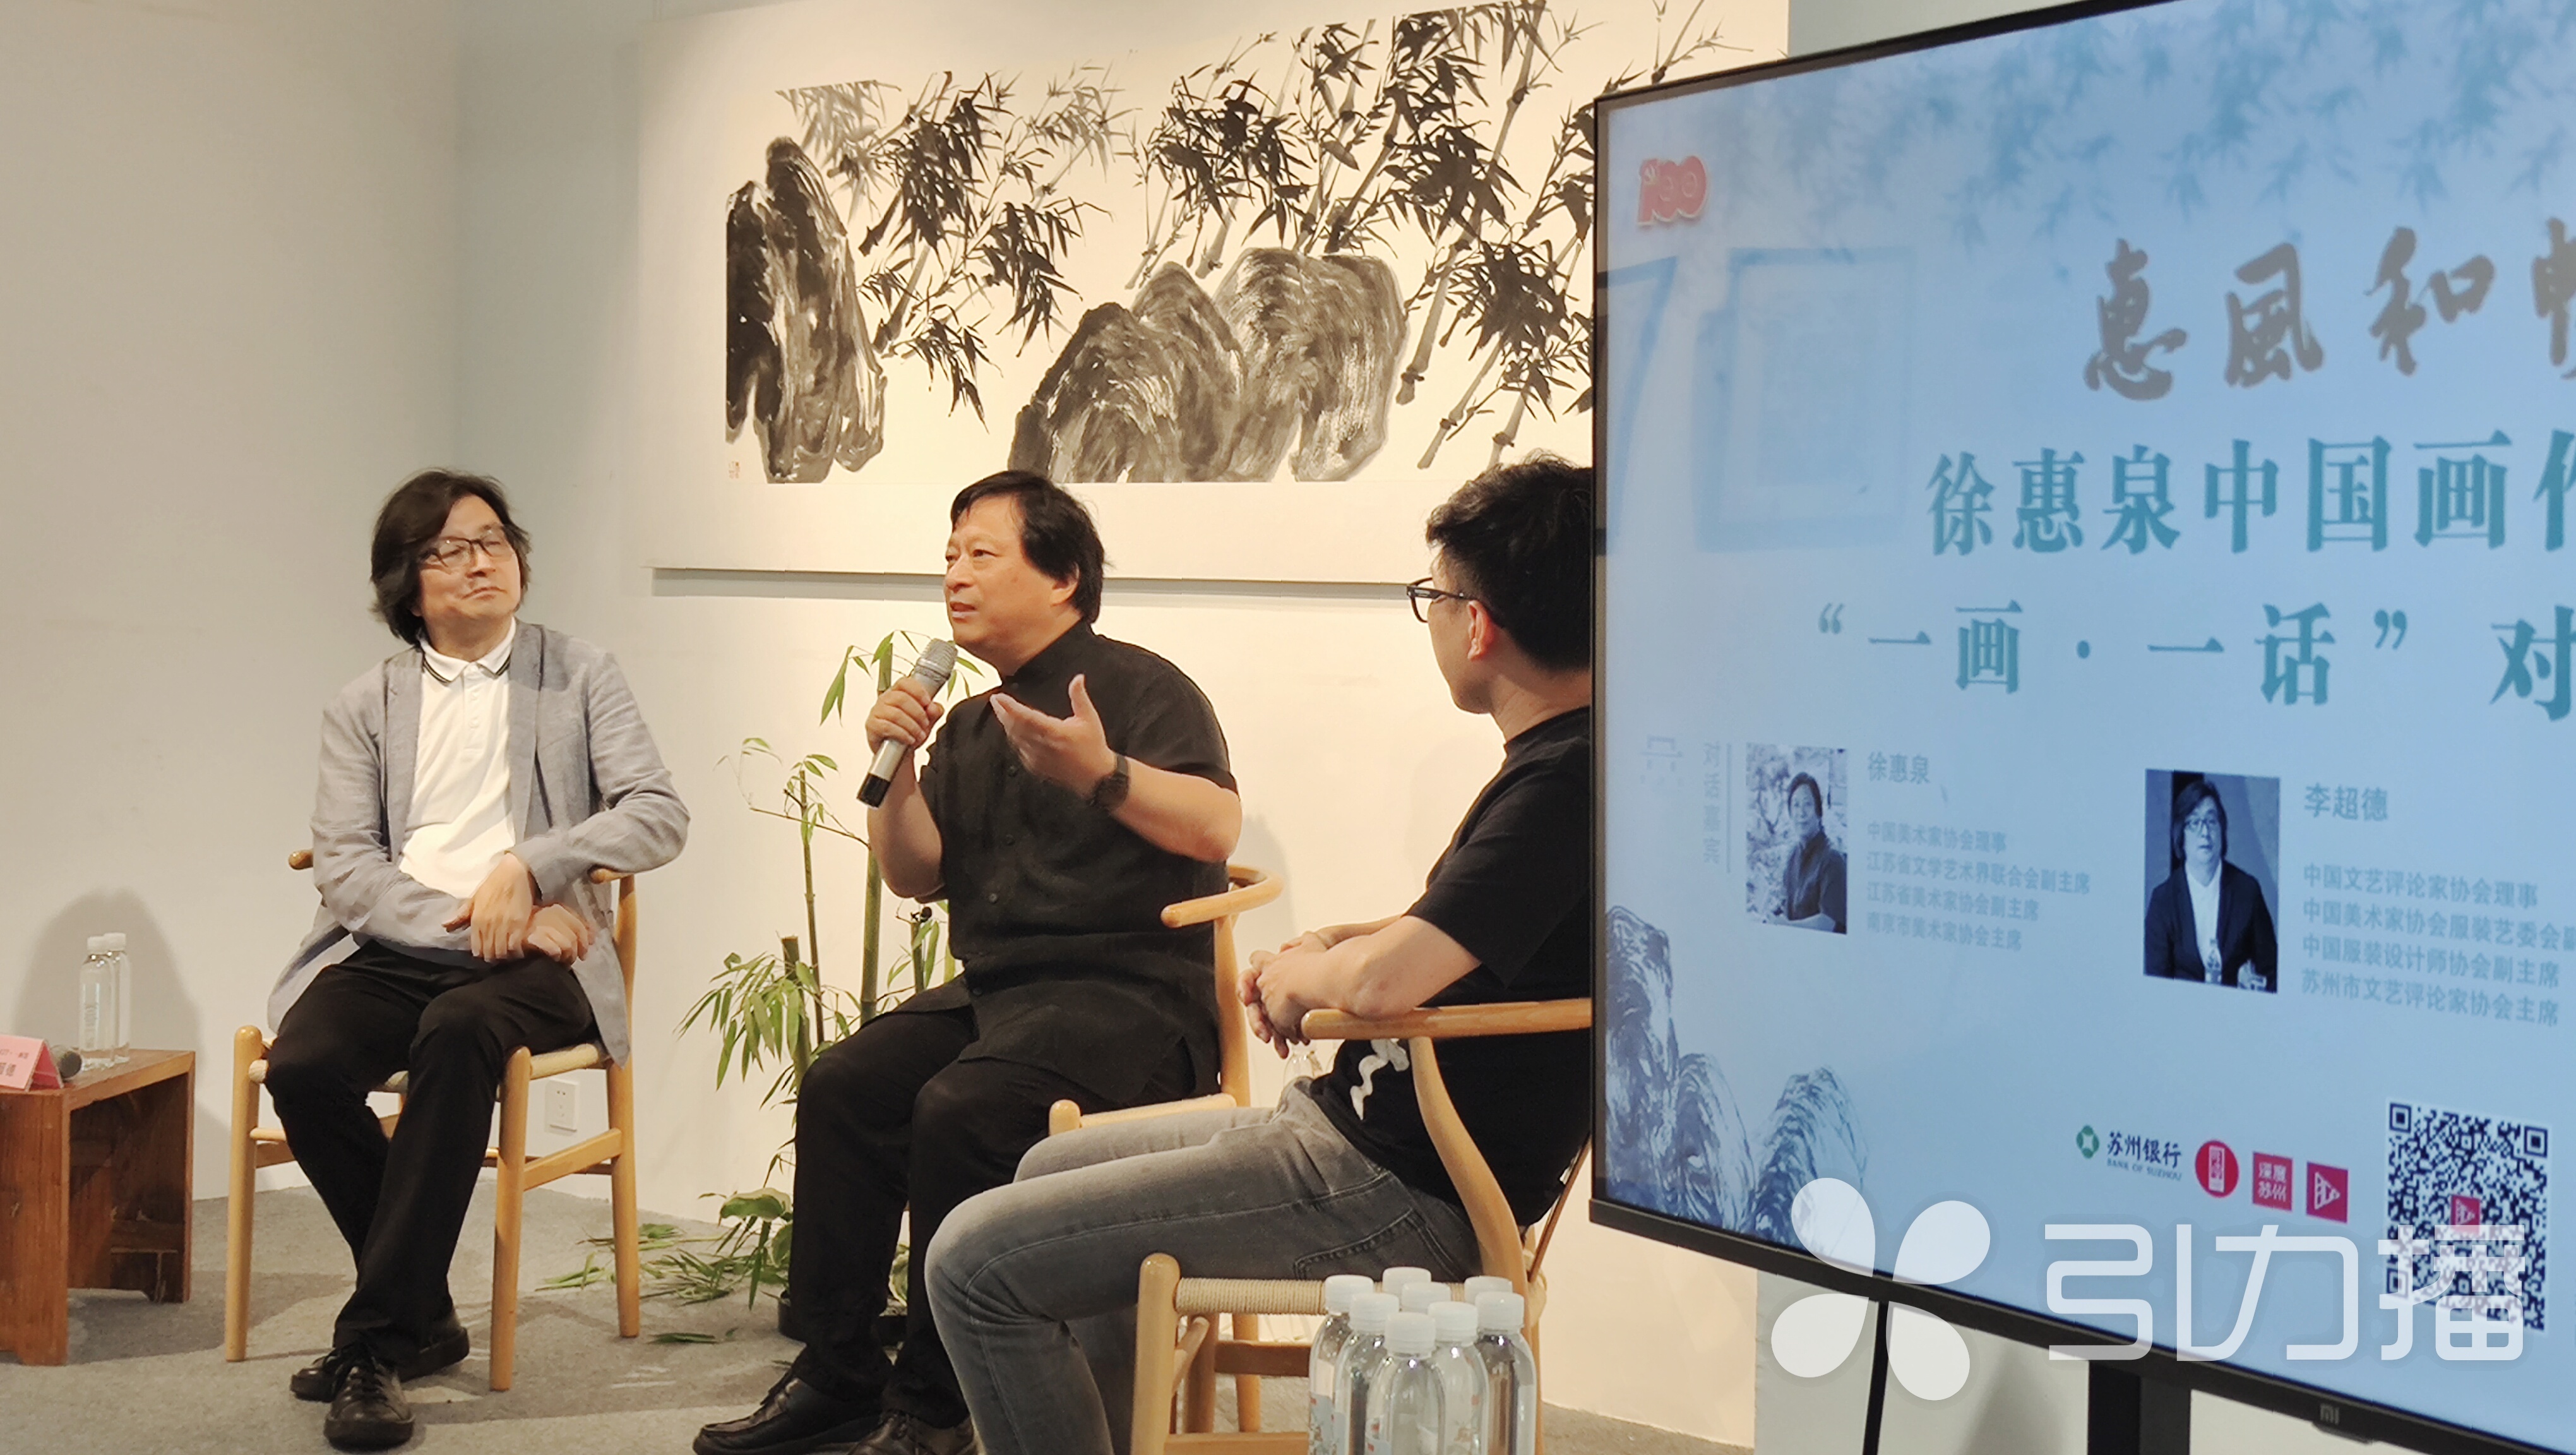 一画一馆， “惠风和畅 ”徐惠泉中国画作品展生动展示画家的水墨艺术之旅